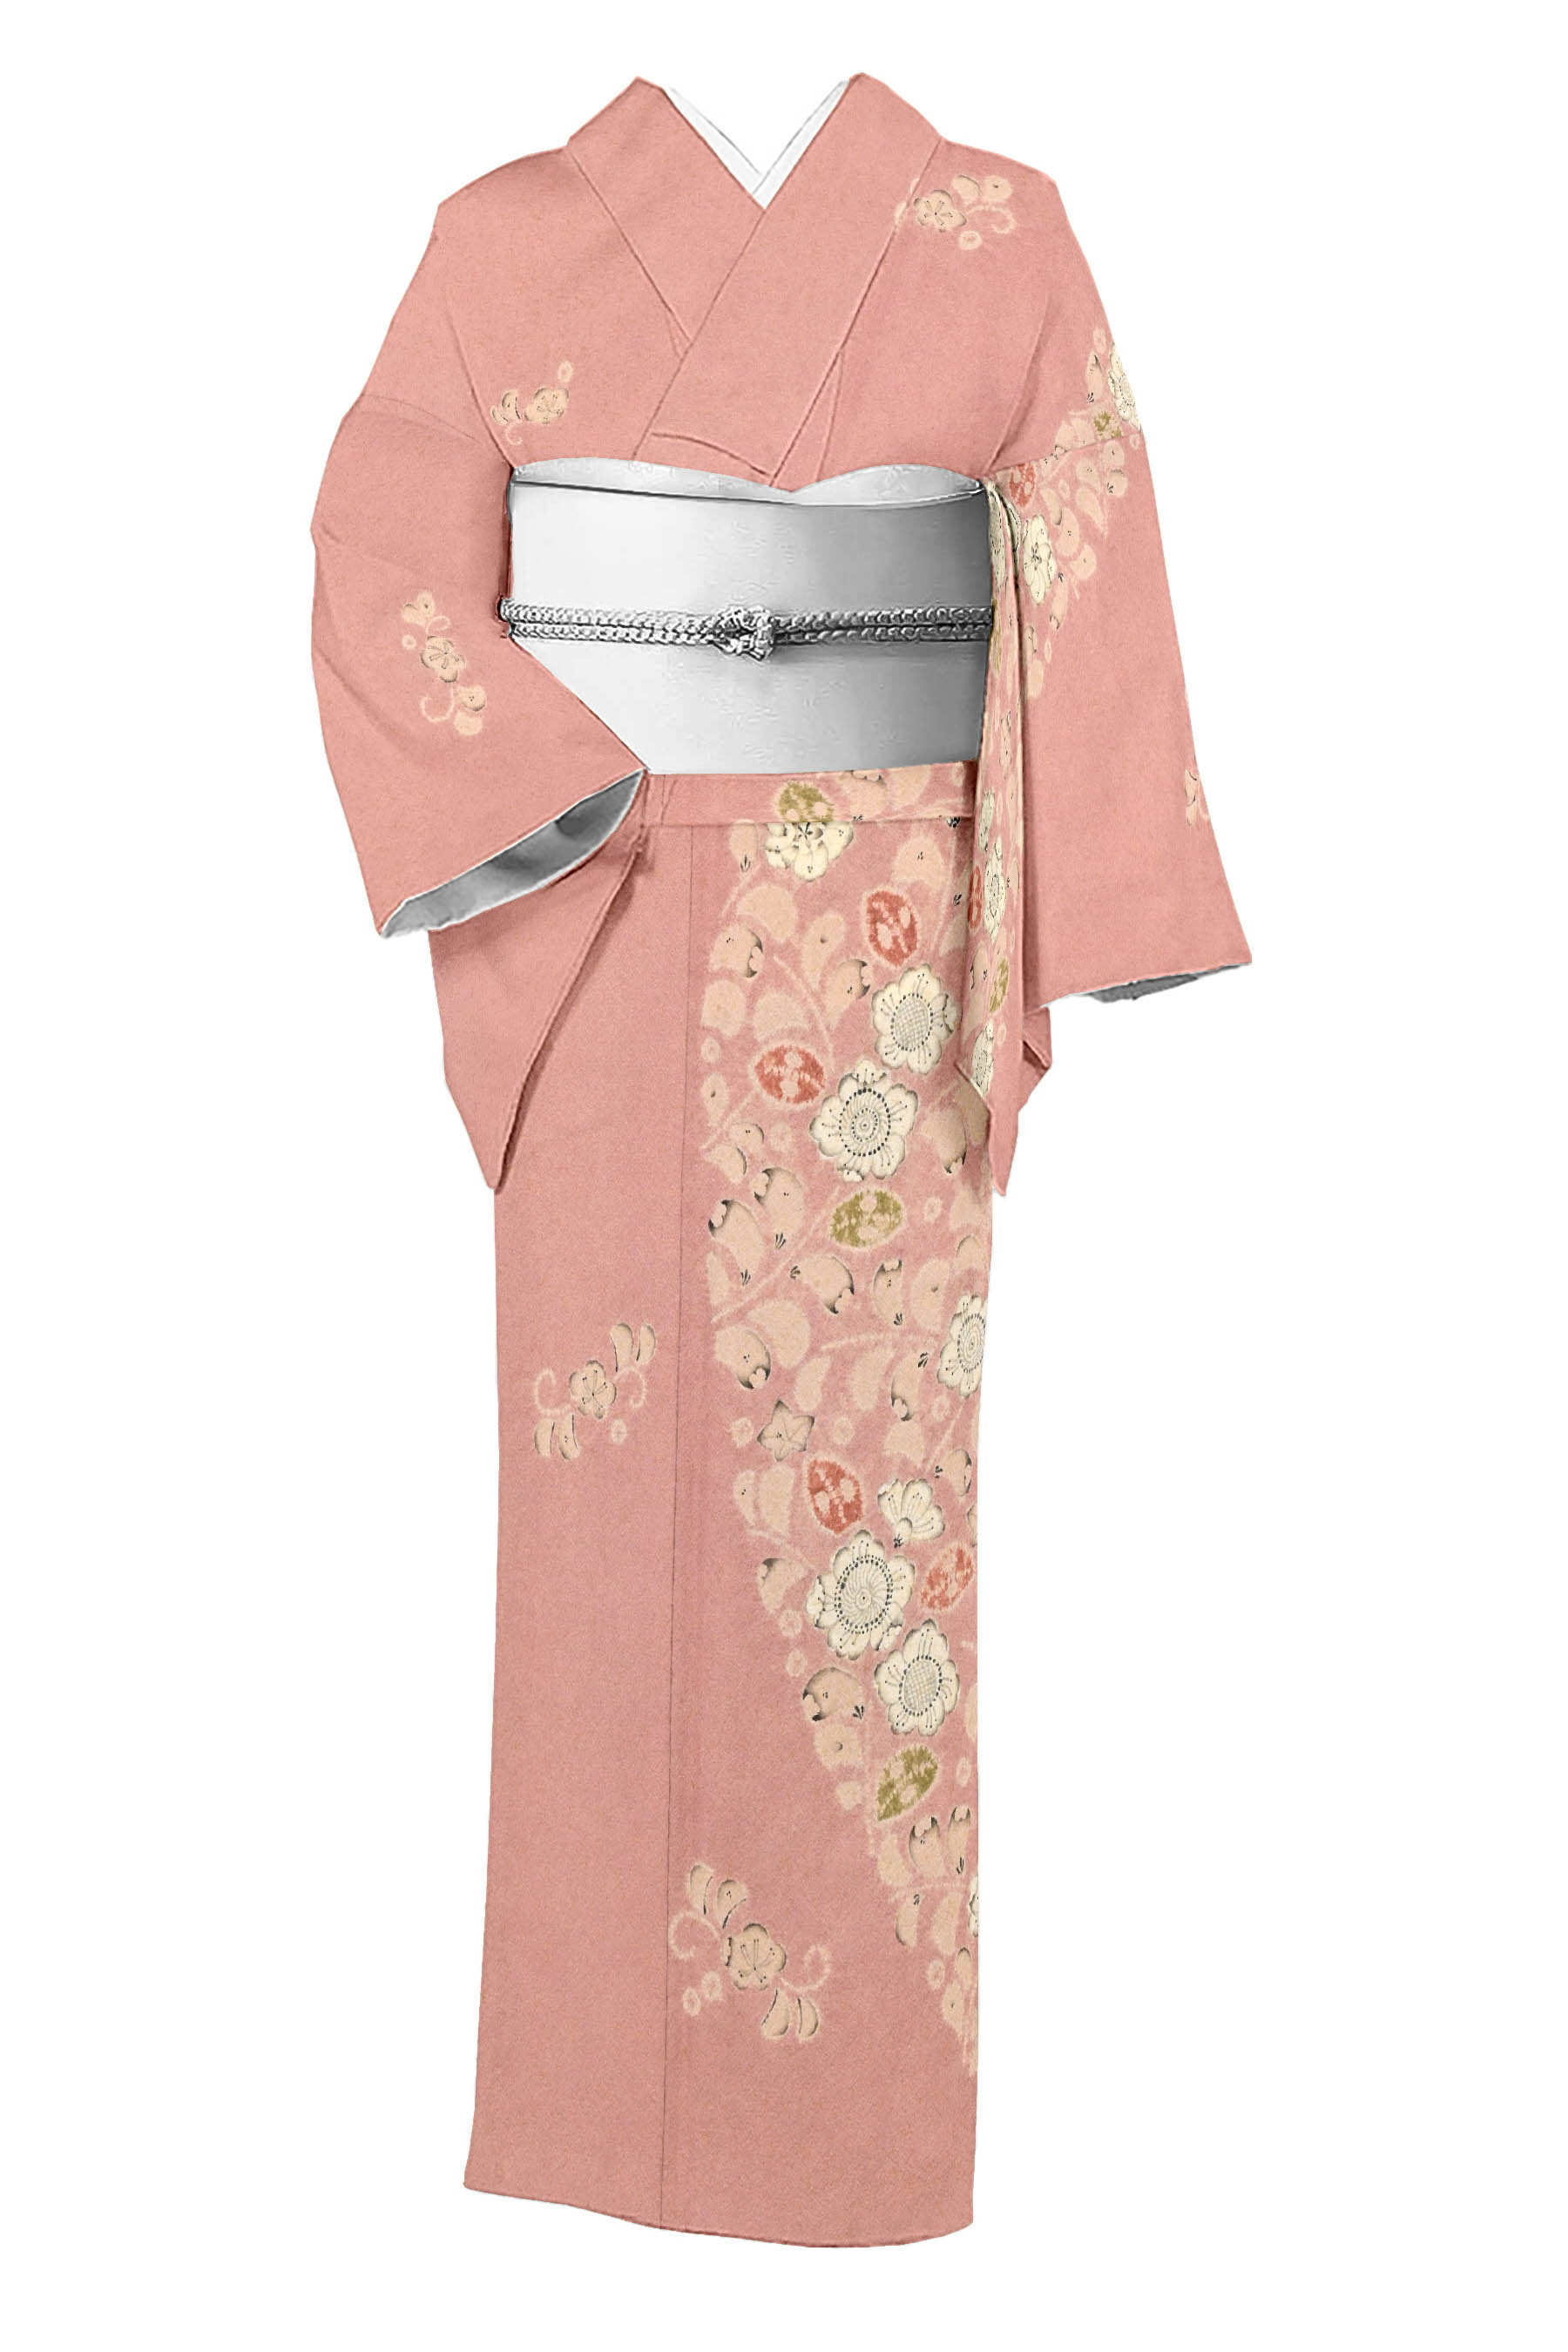 小紋 縮緬 正絹 広えり 合わせ 日本全国送料無料 - 着物・浴衣